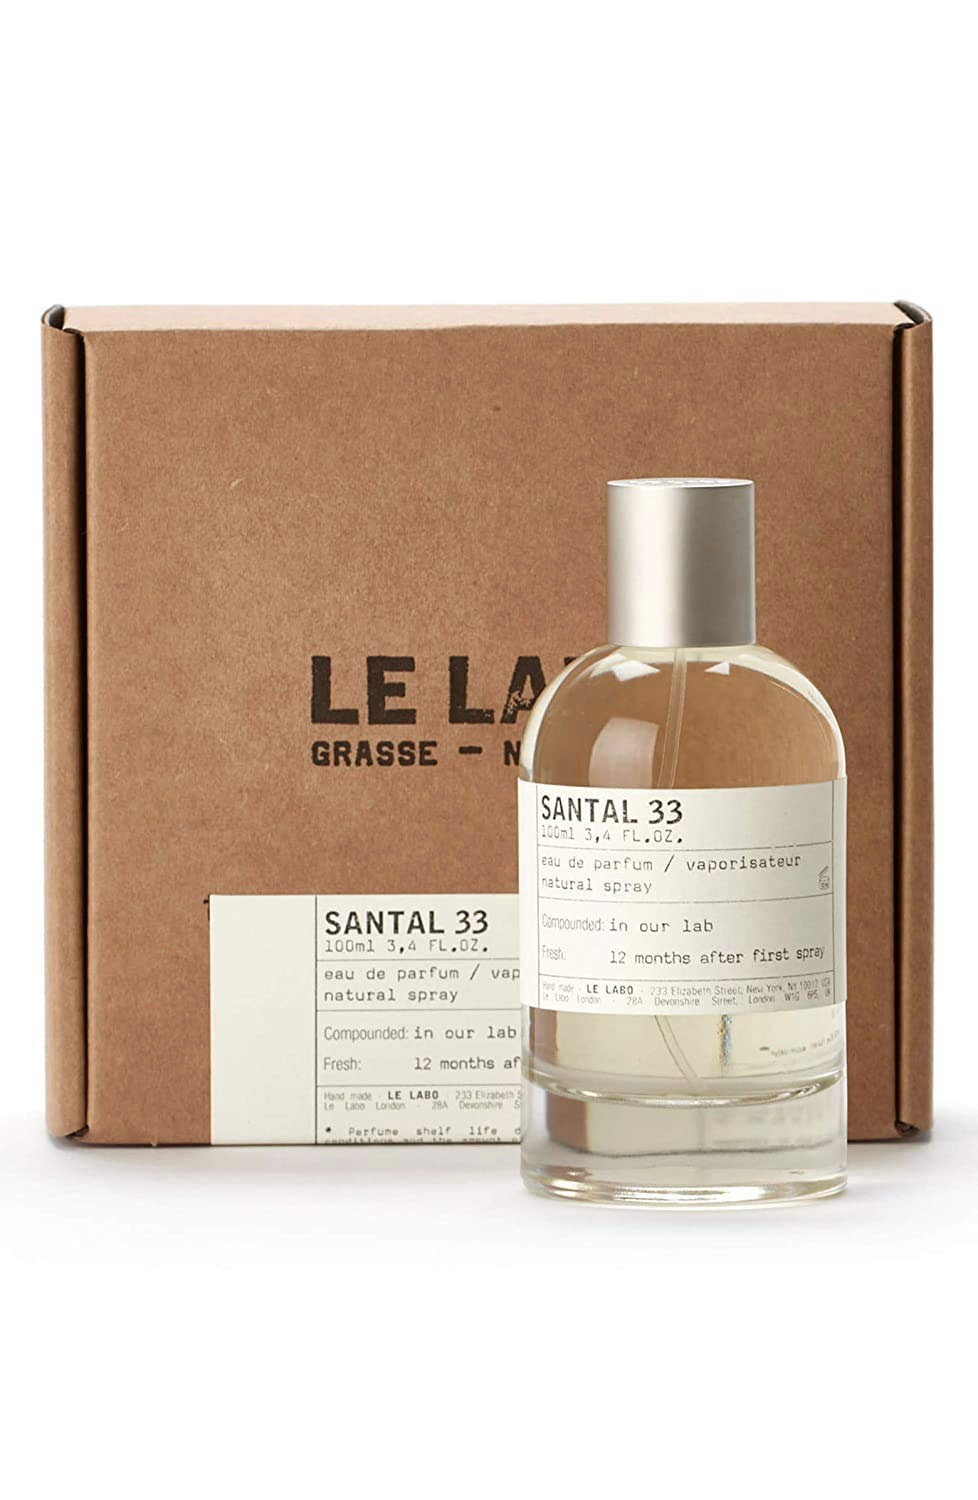 Le Labo Santal 33 Eau de Parfum 100ml / 3.4oz - 25 PIECE LOT